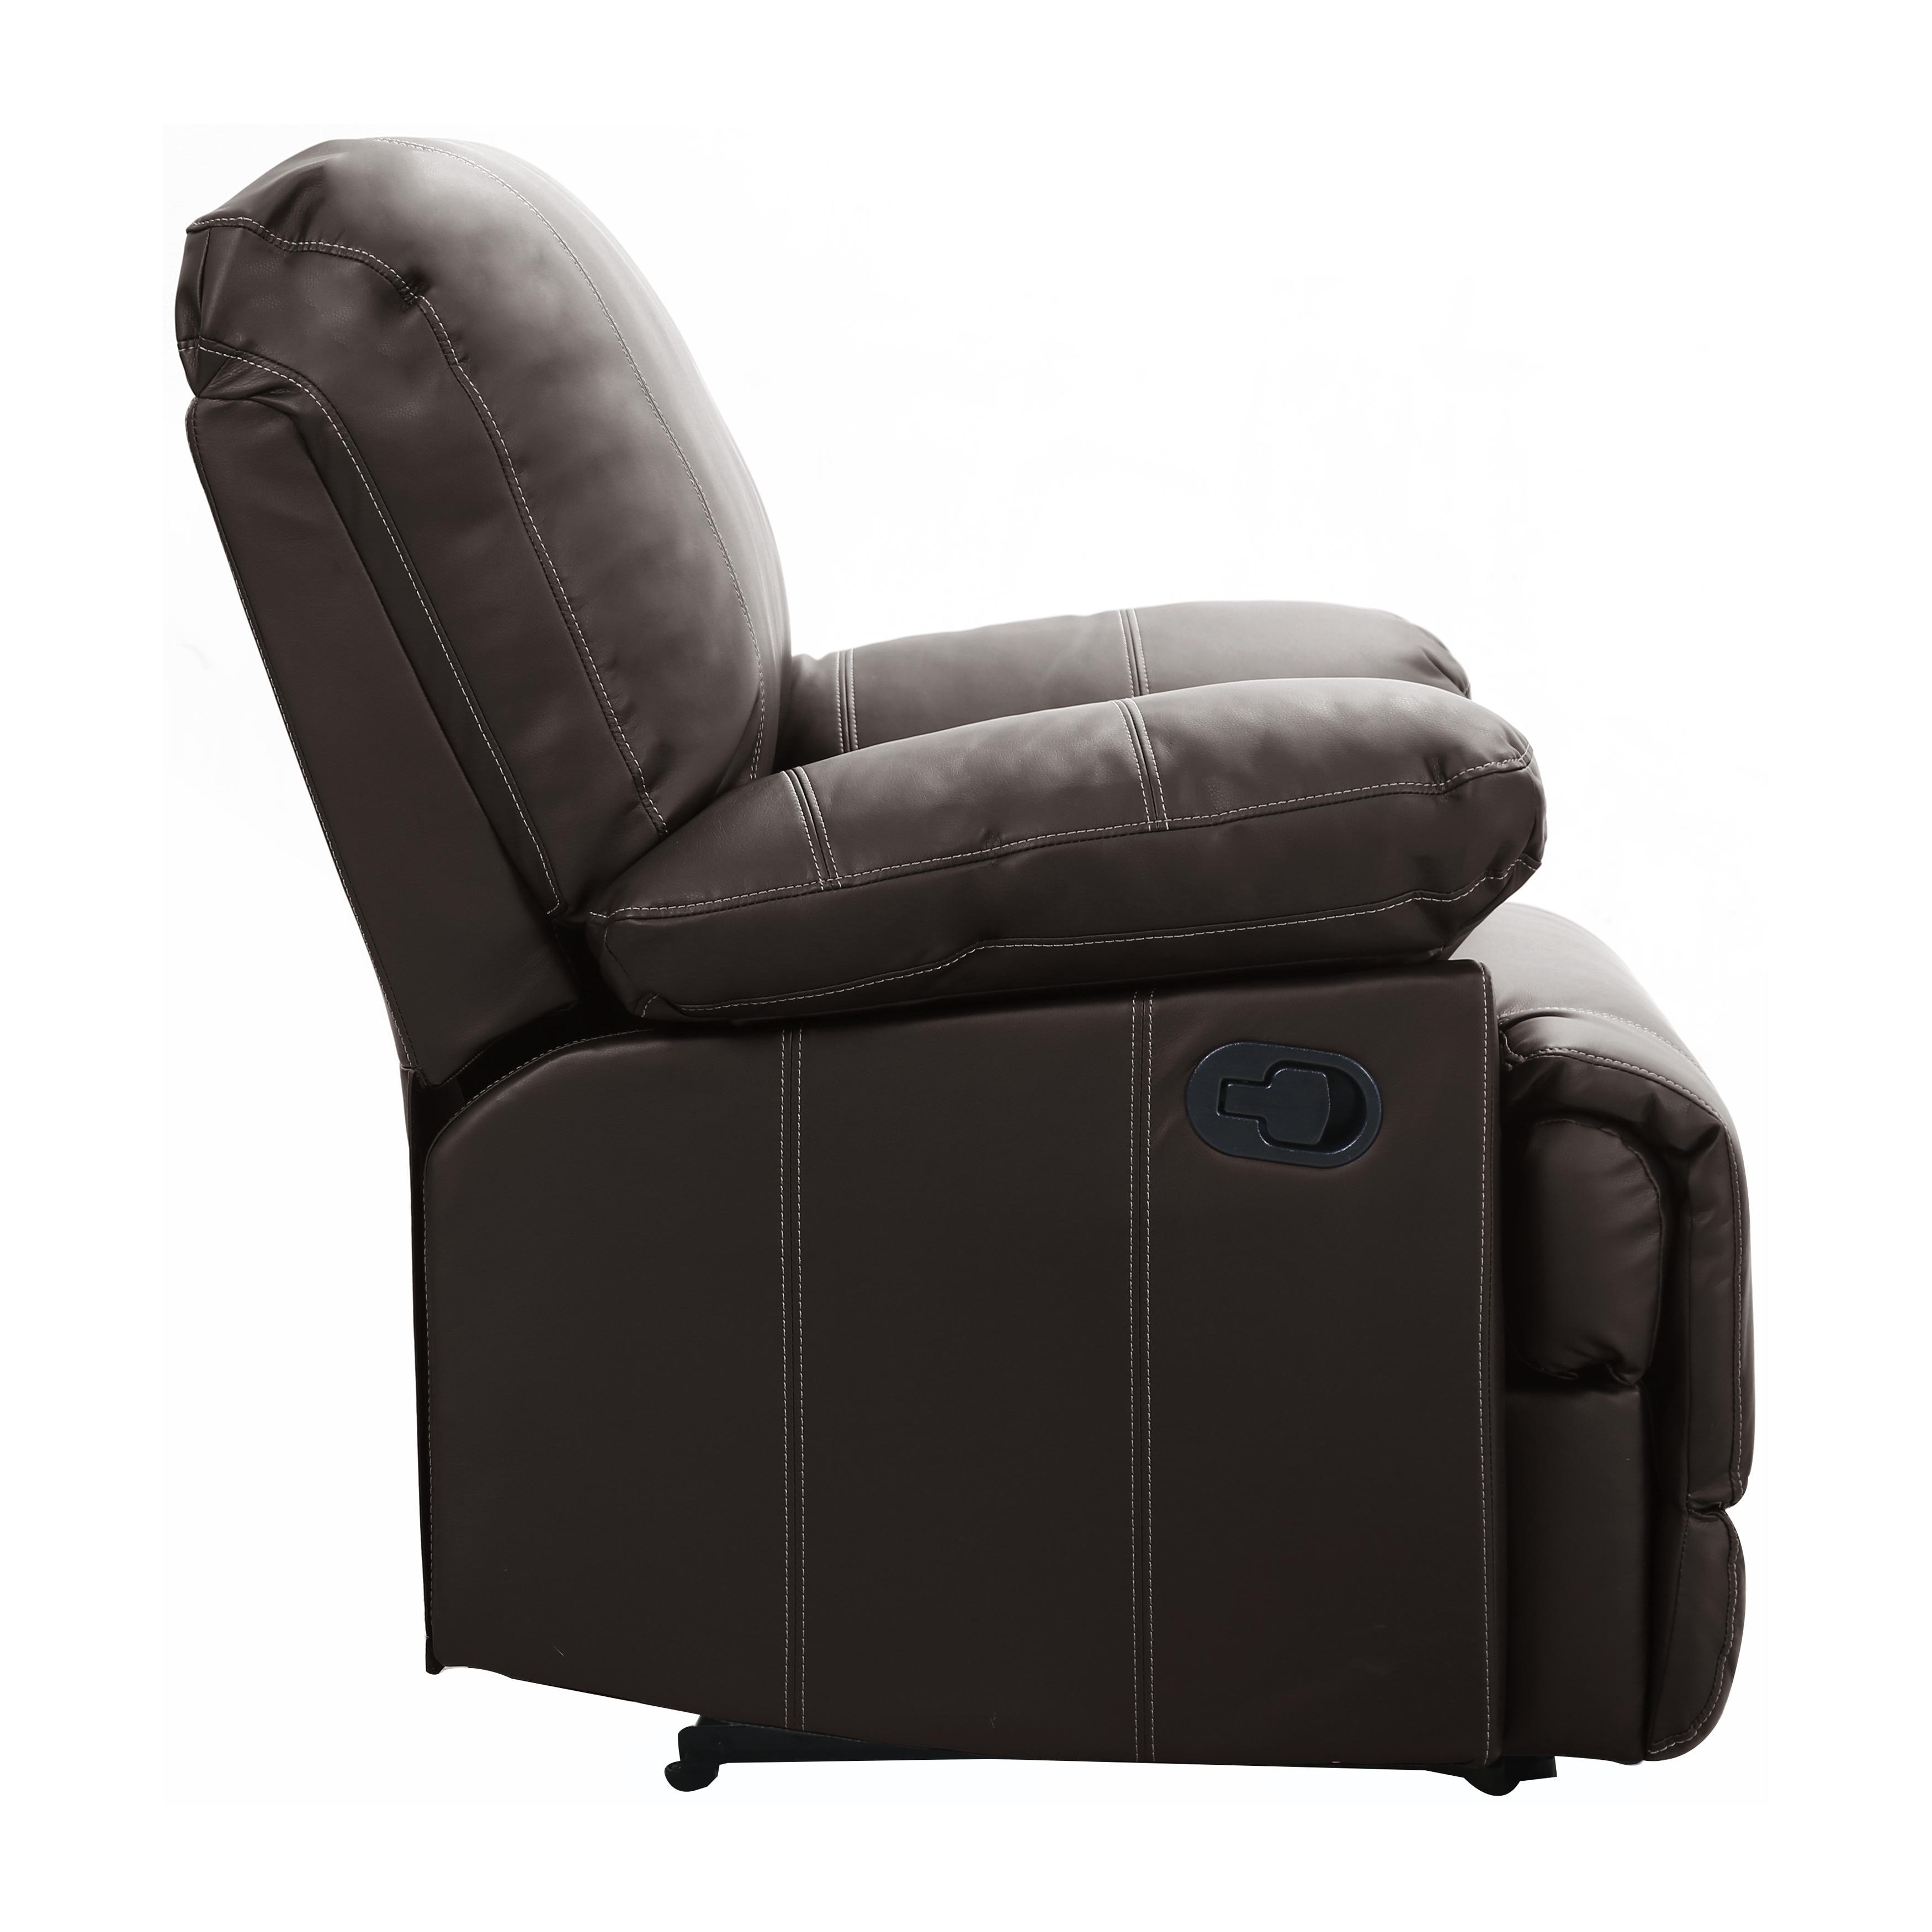 

    
Homelegance Cassville Chair 8403-1-C Reclining Chair Brown 8403-1-C
